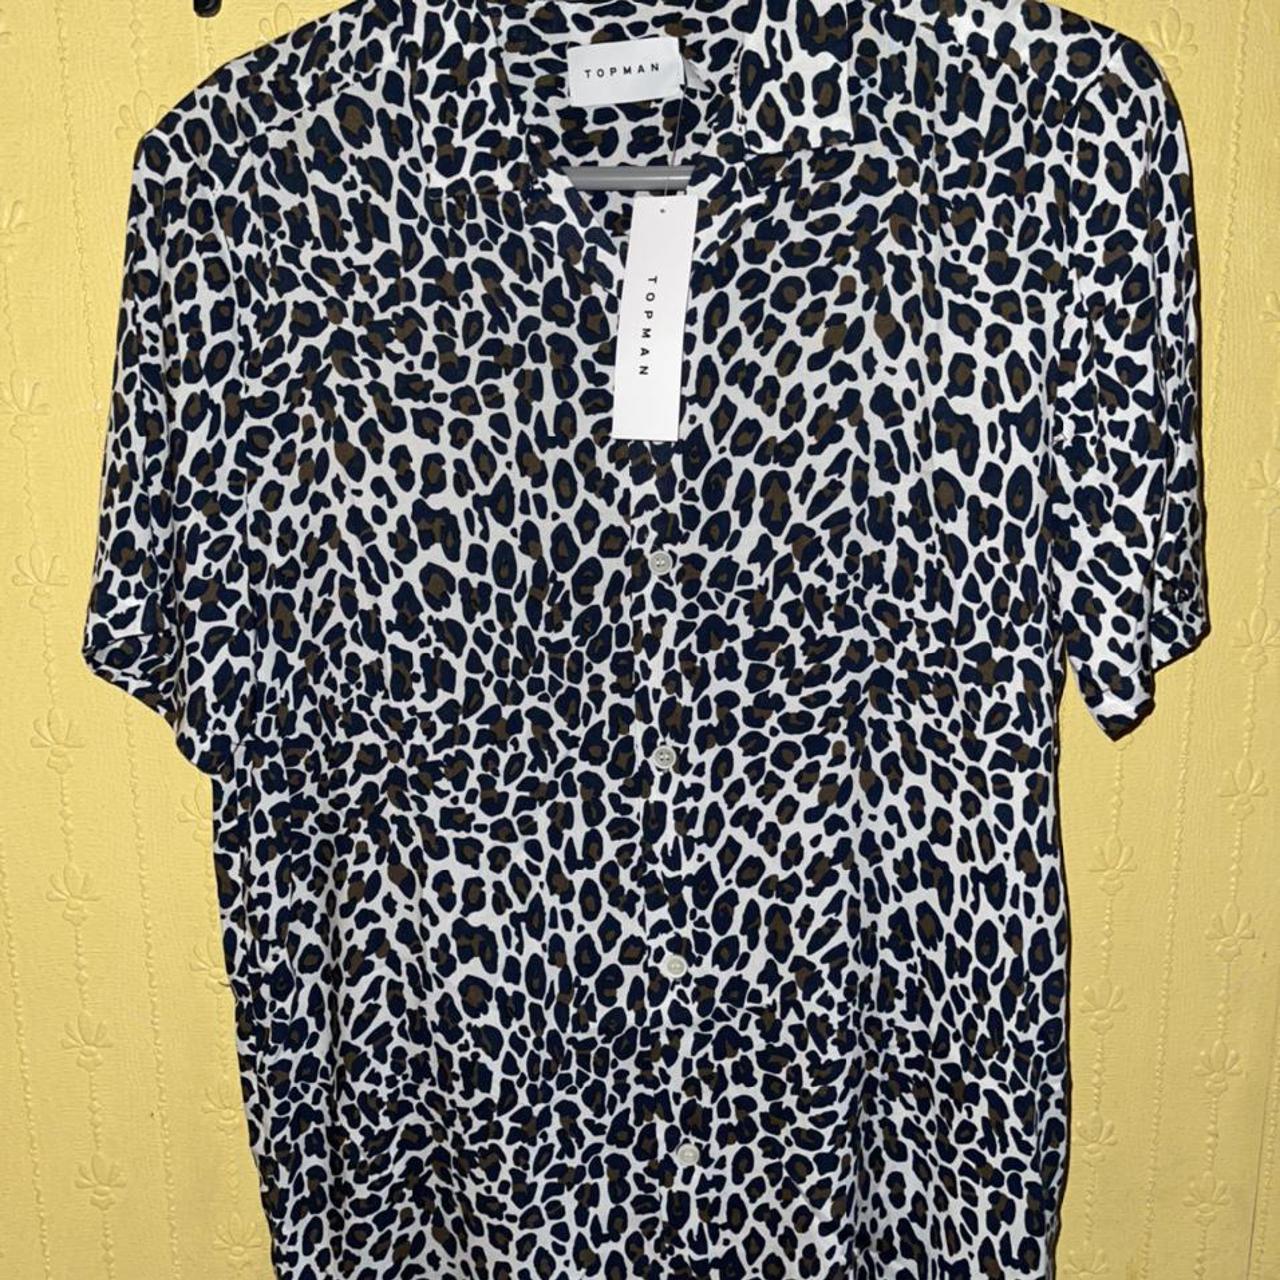 Topman boxy fit leopard print shirt brand new still... - Depop